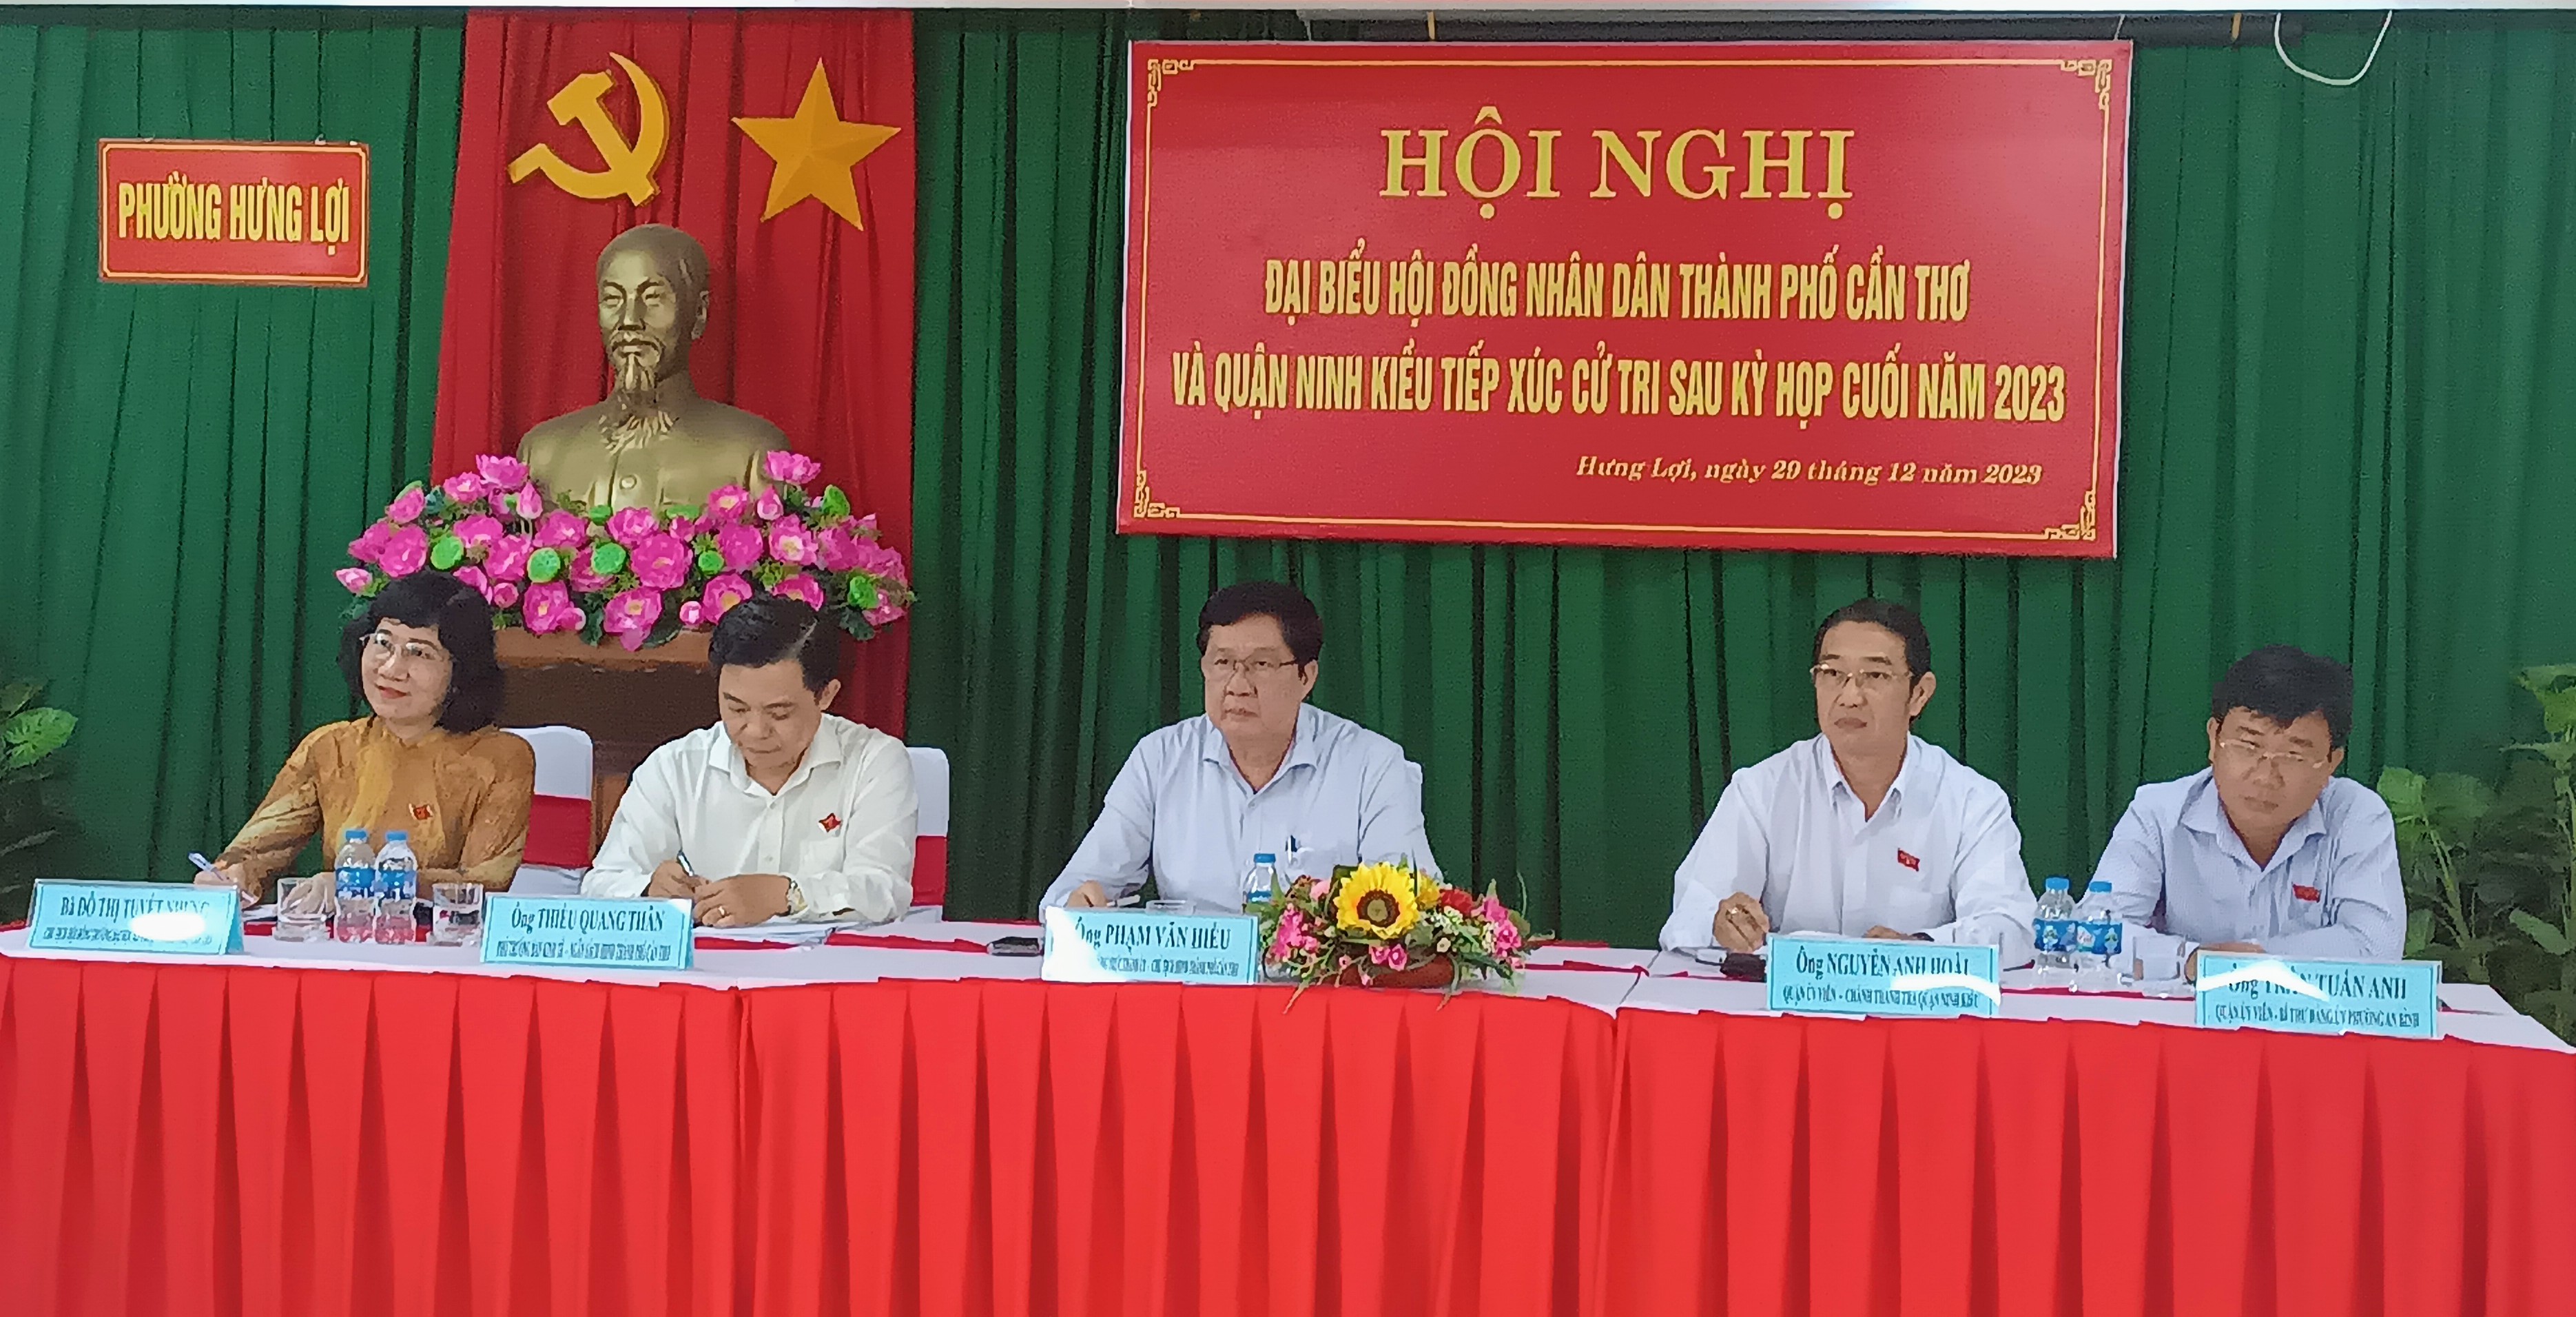 Đại biểu HĐND thành phố Cần Thơ và quận Ninh Kiều tiếp xúc cử tri 2 phường Hưng Lợi và An Bình